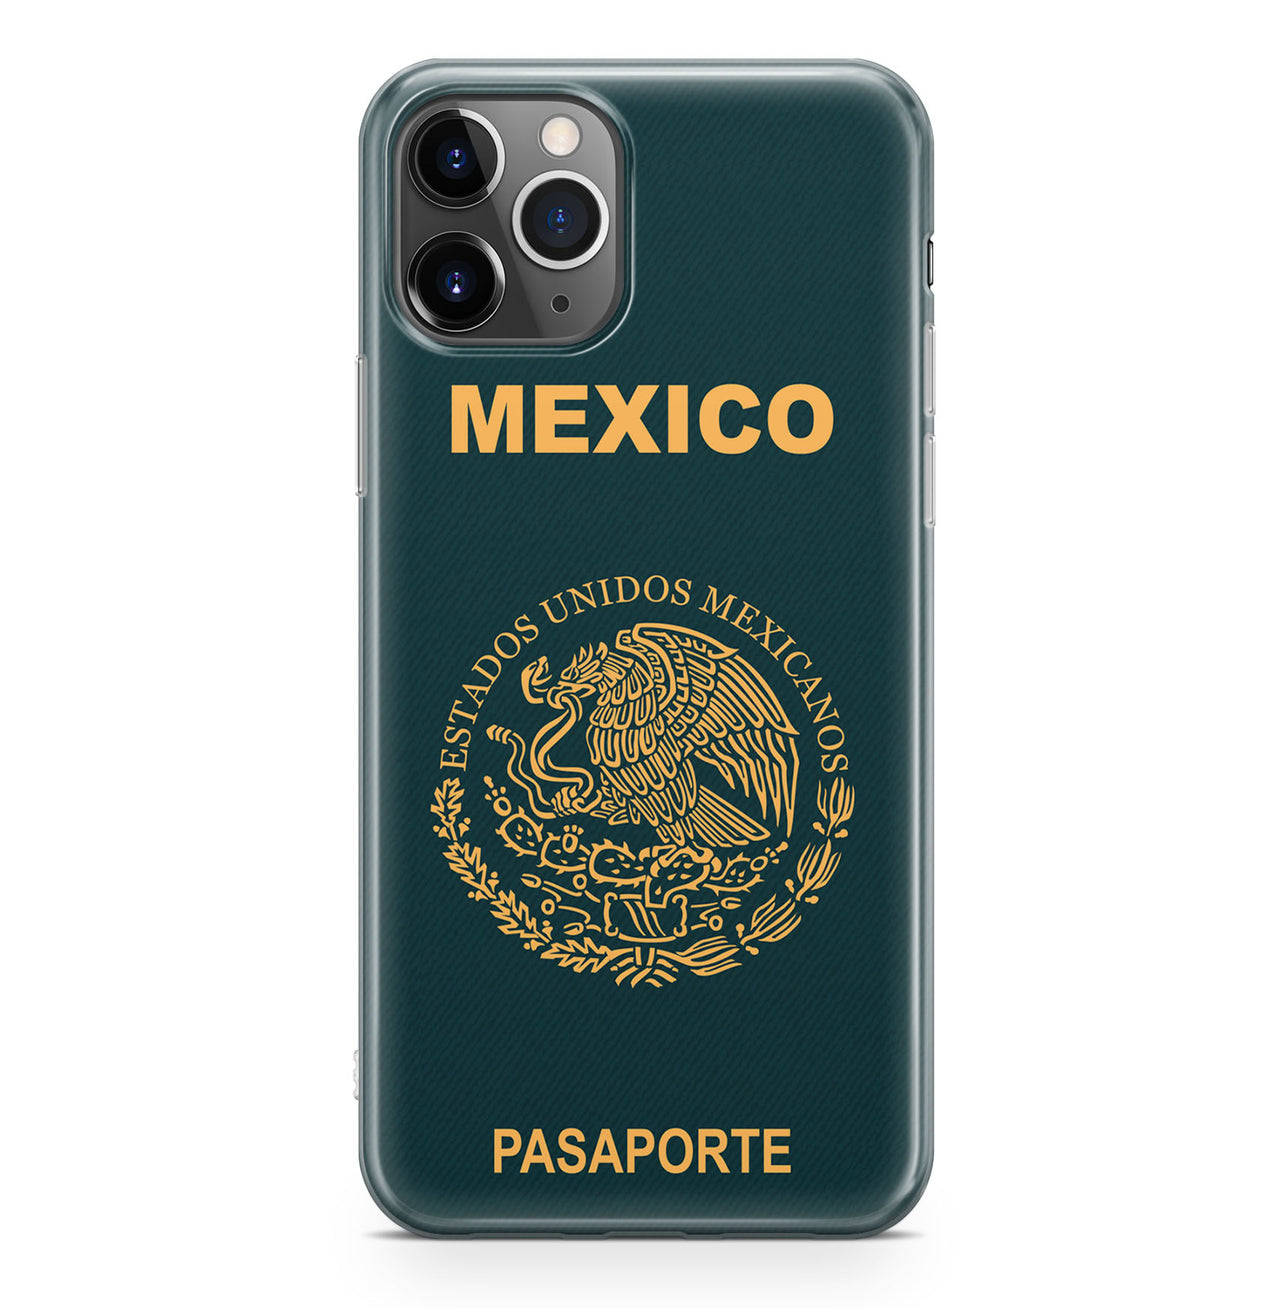 Mexico Passport Designed iPhone Cases